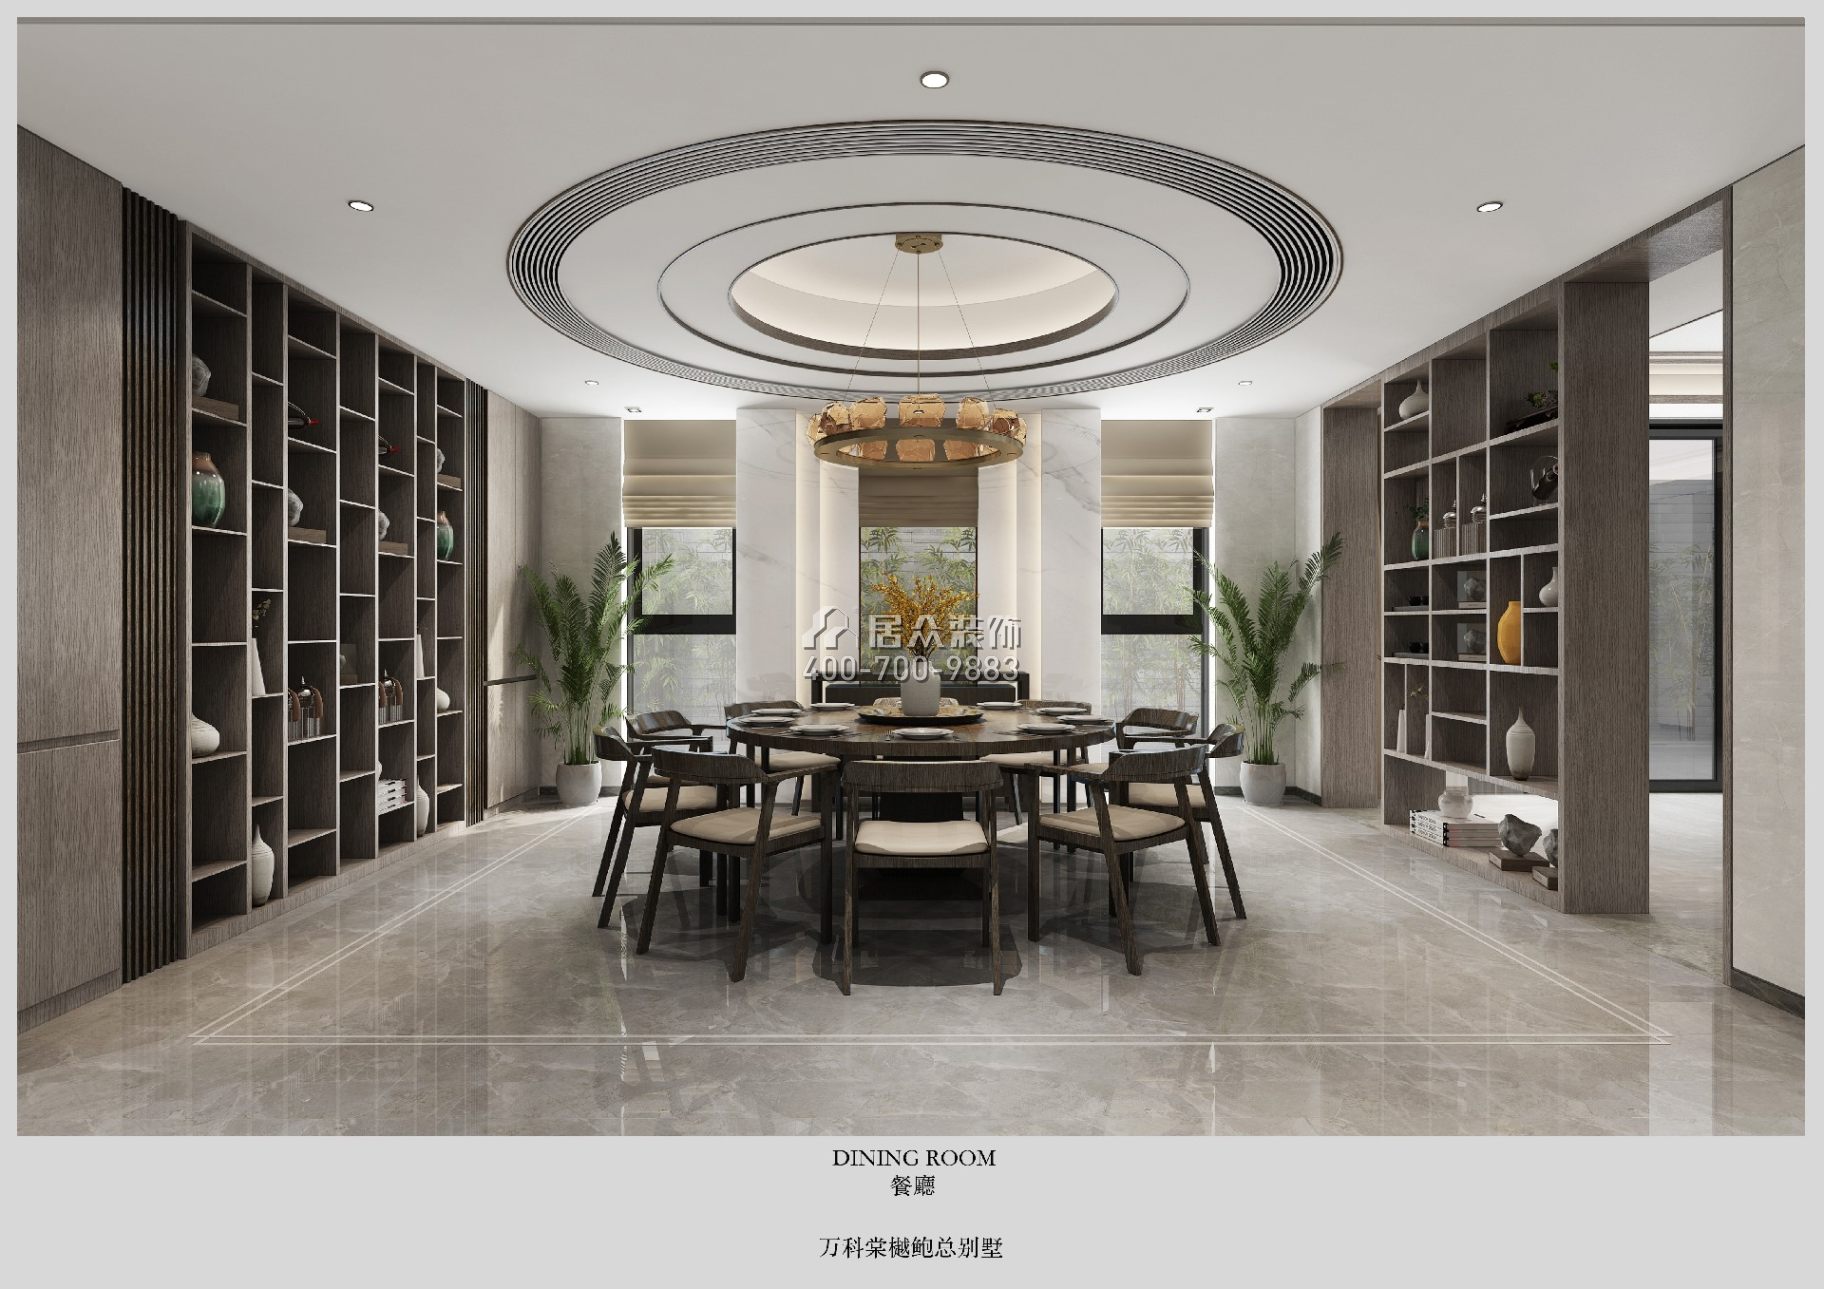 萬科棠樾悅水莊986平方米現代簡約風格別墅戶型餐廳裝修效果圖